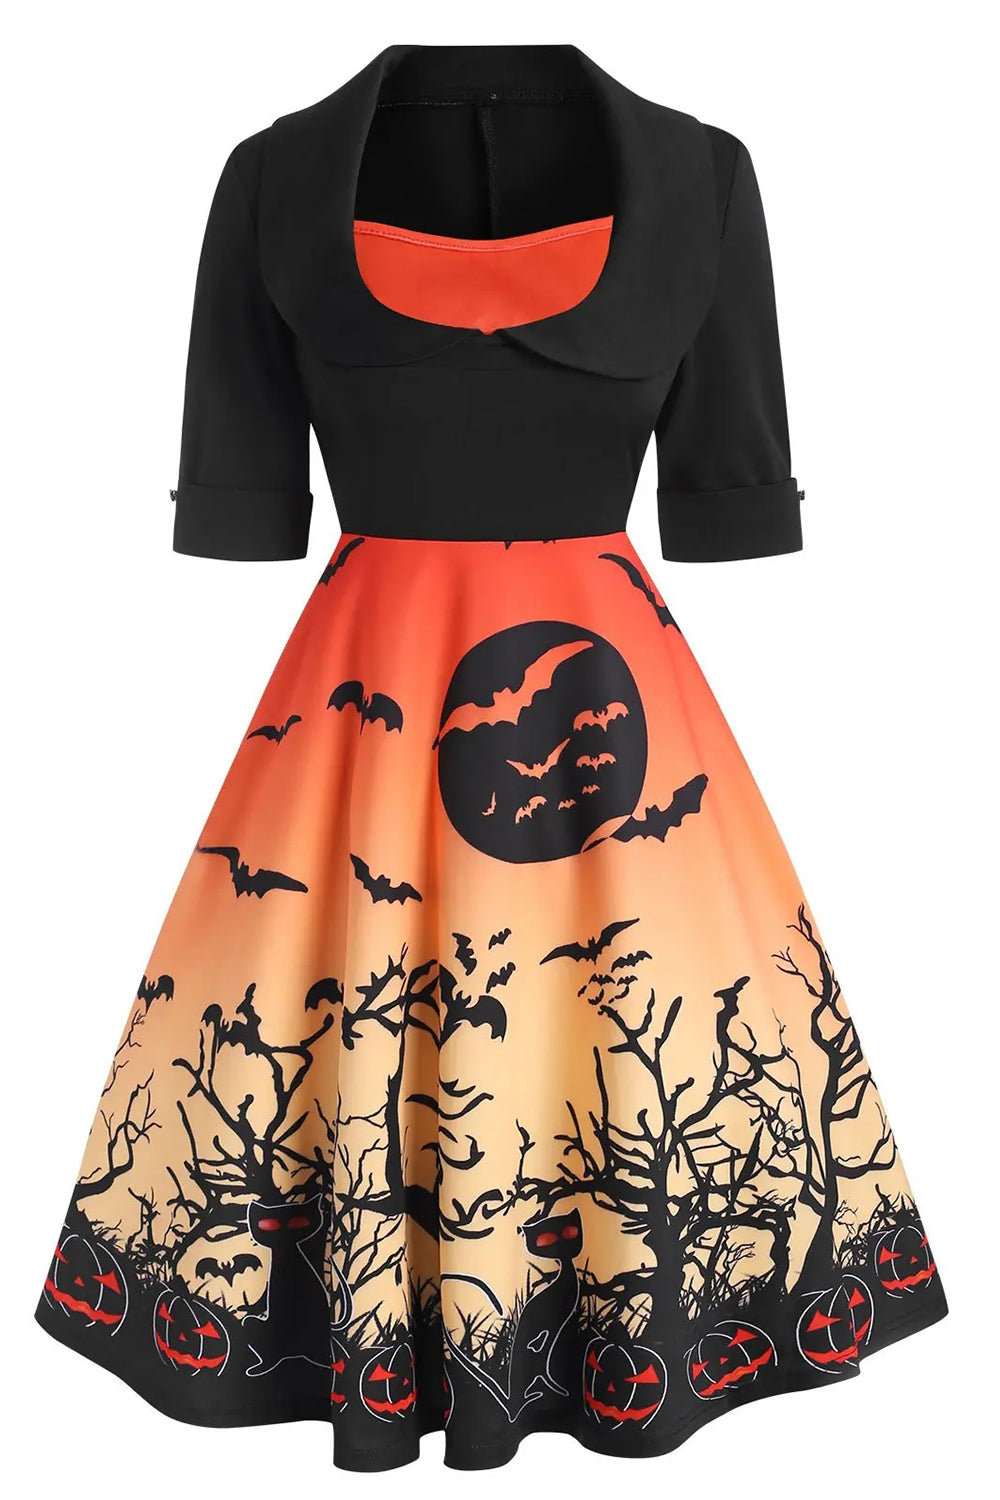 Orange Short Sleeves Vintage Halloween Dress